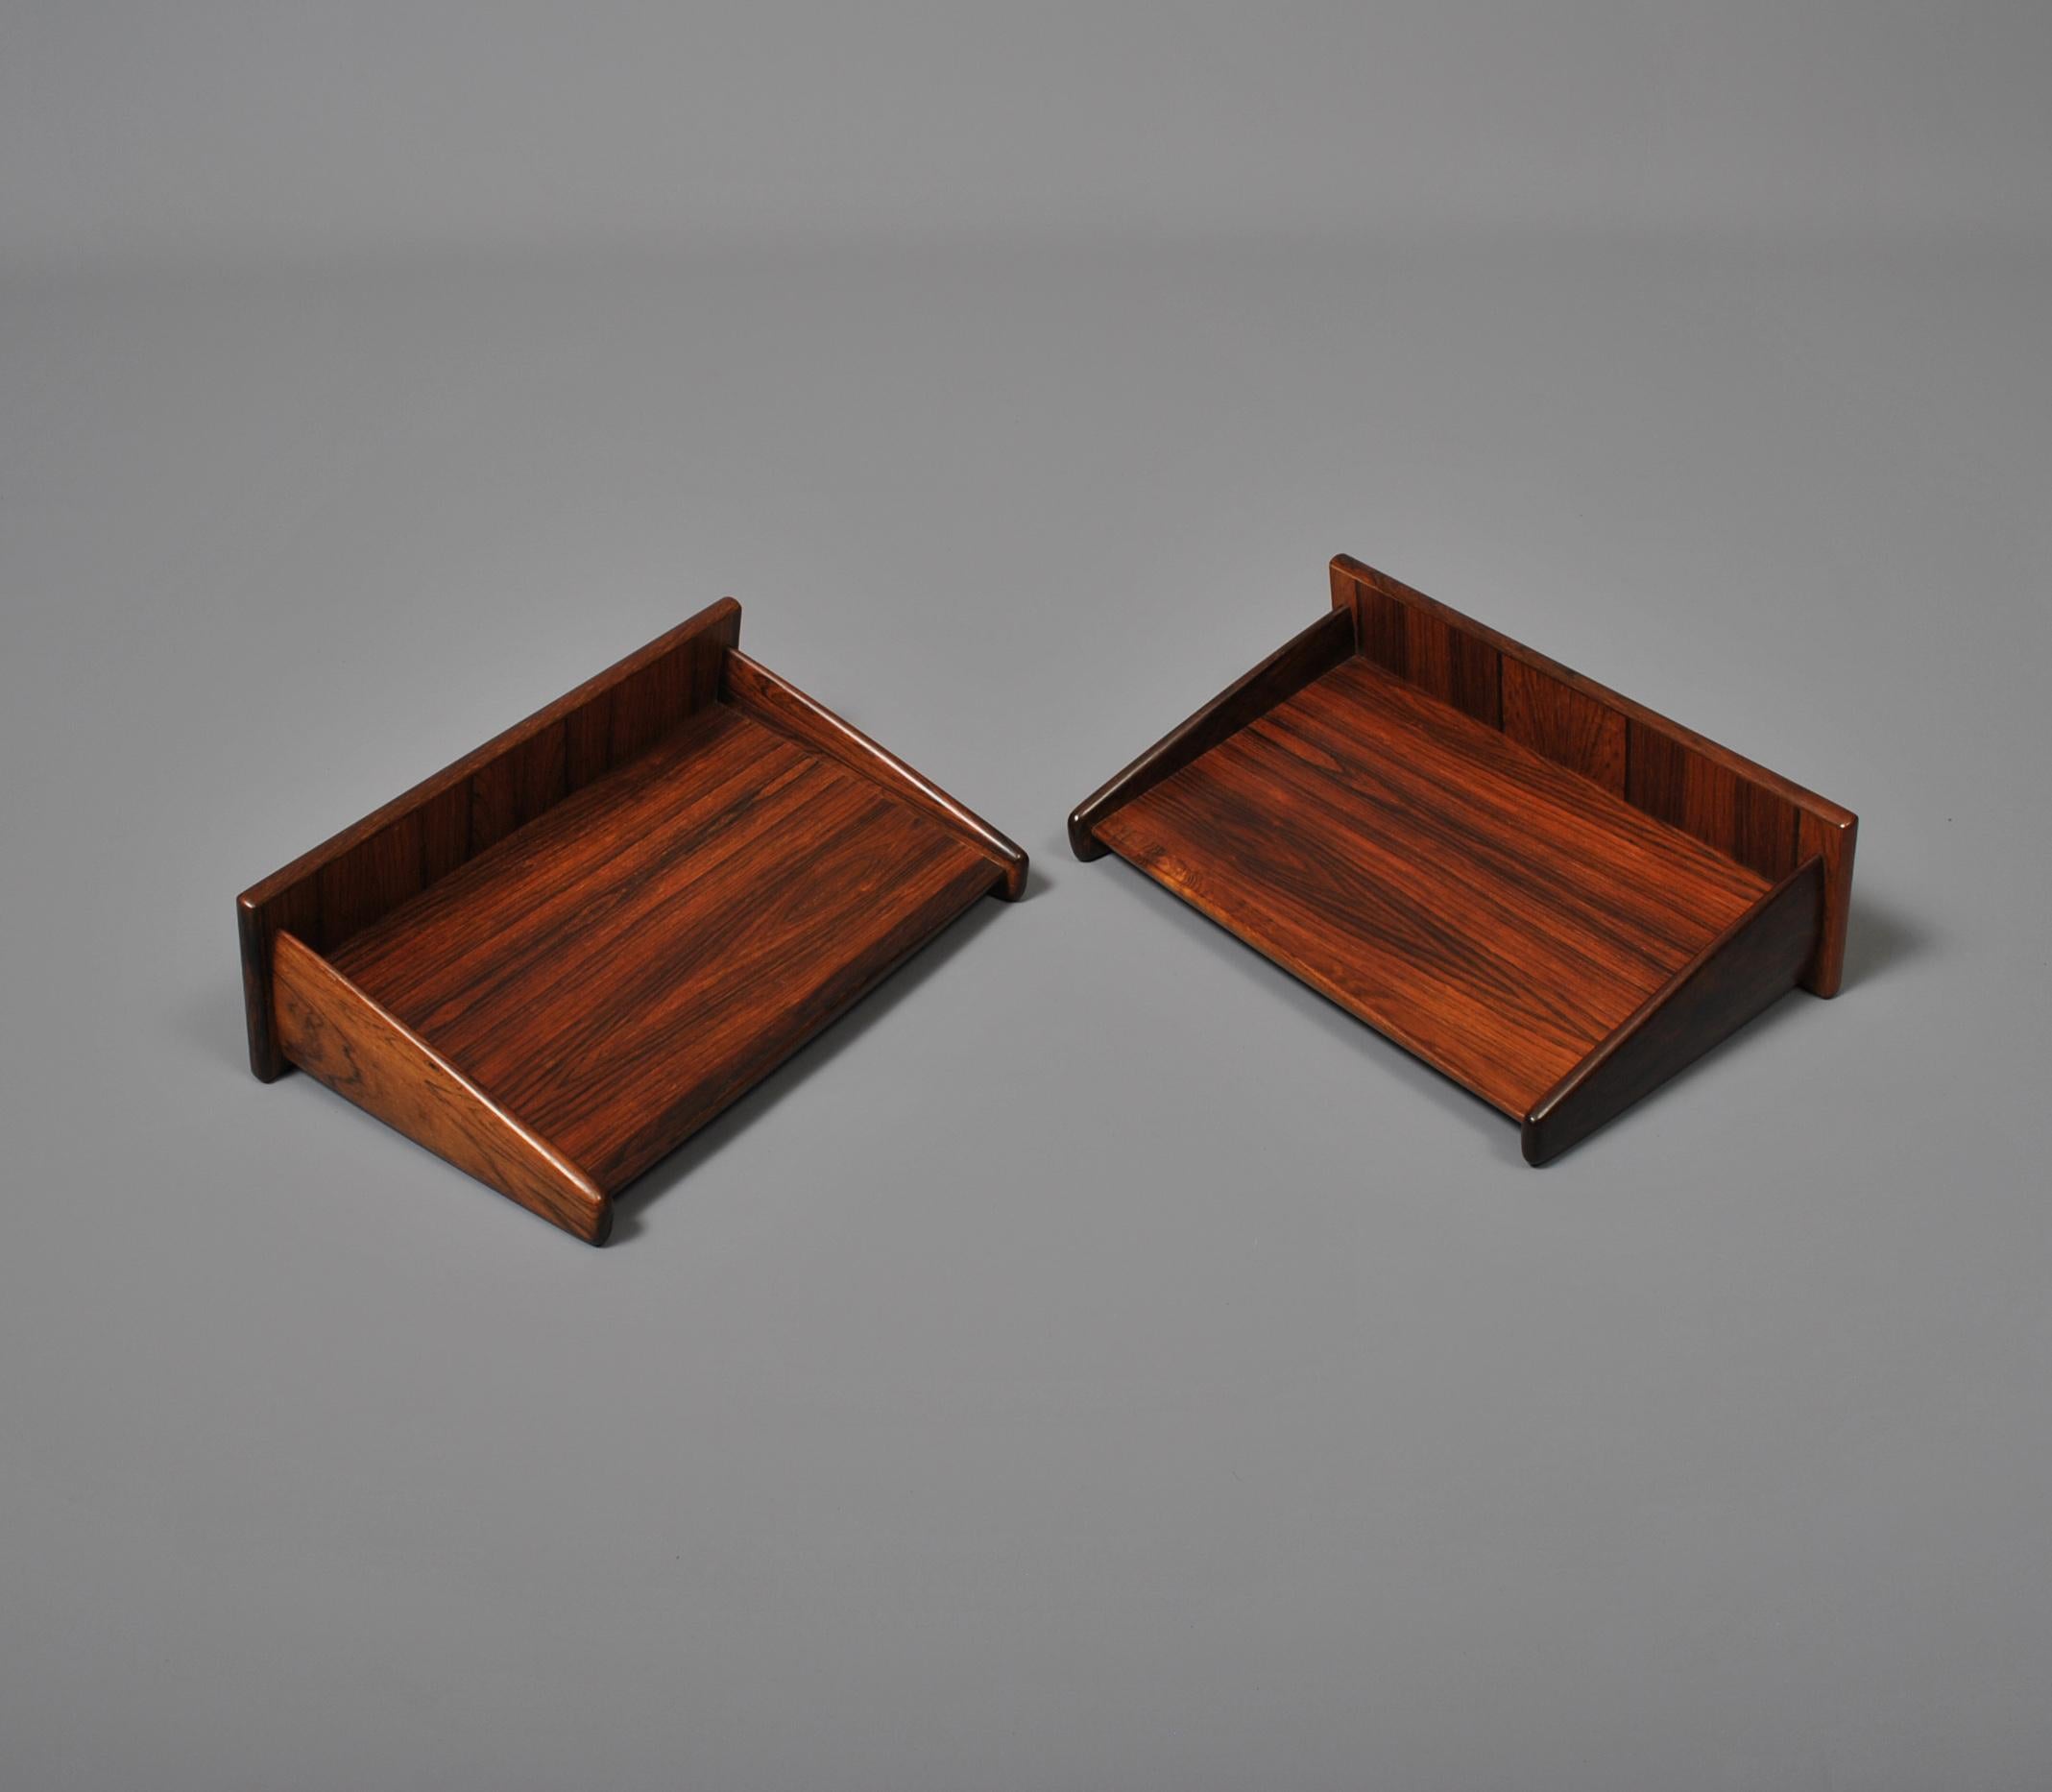 Hardwood Danish Floating Shelves or nightstands, Melvin Mikkelsen